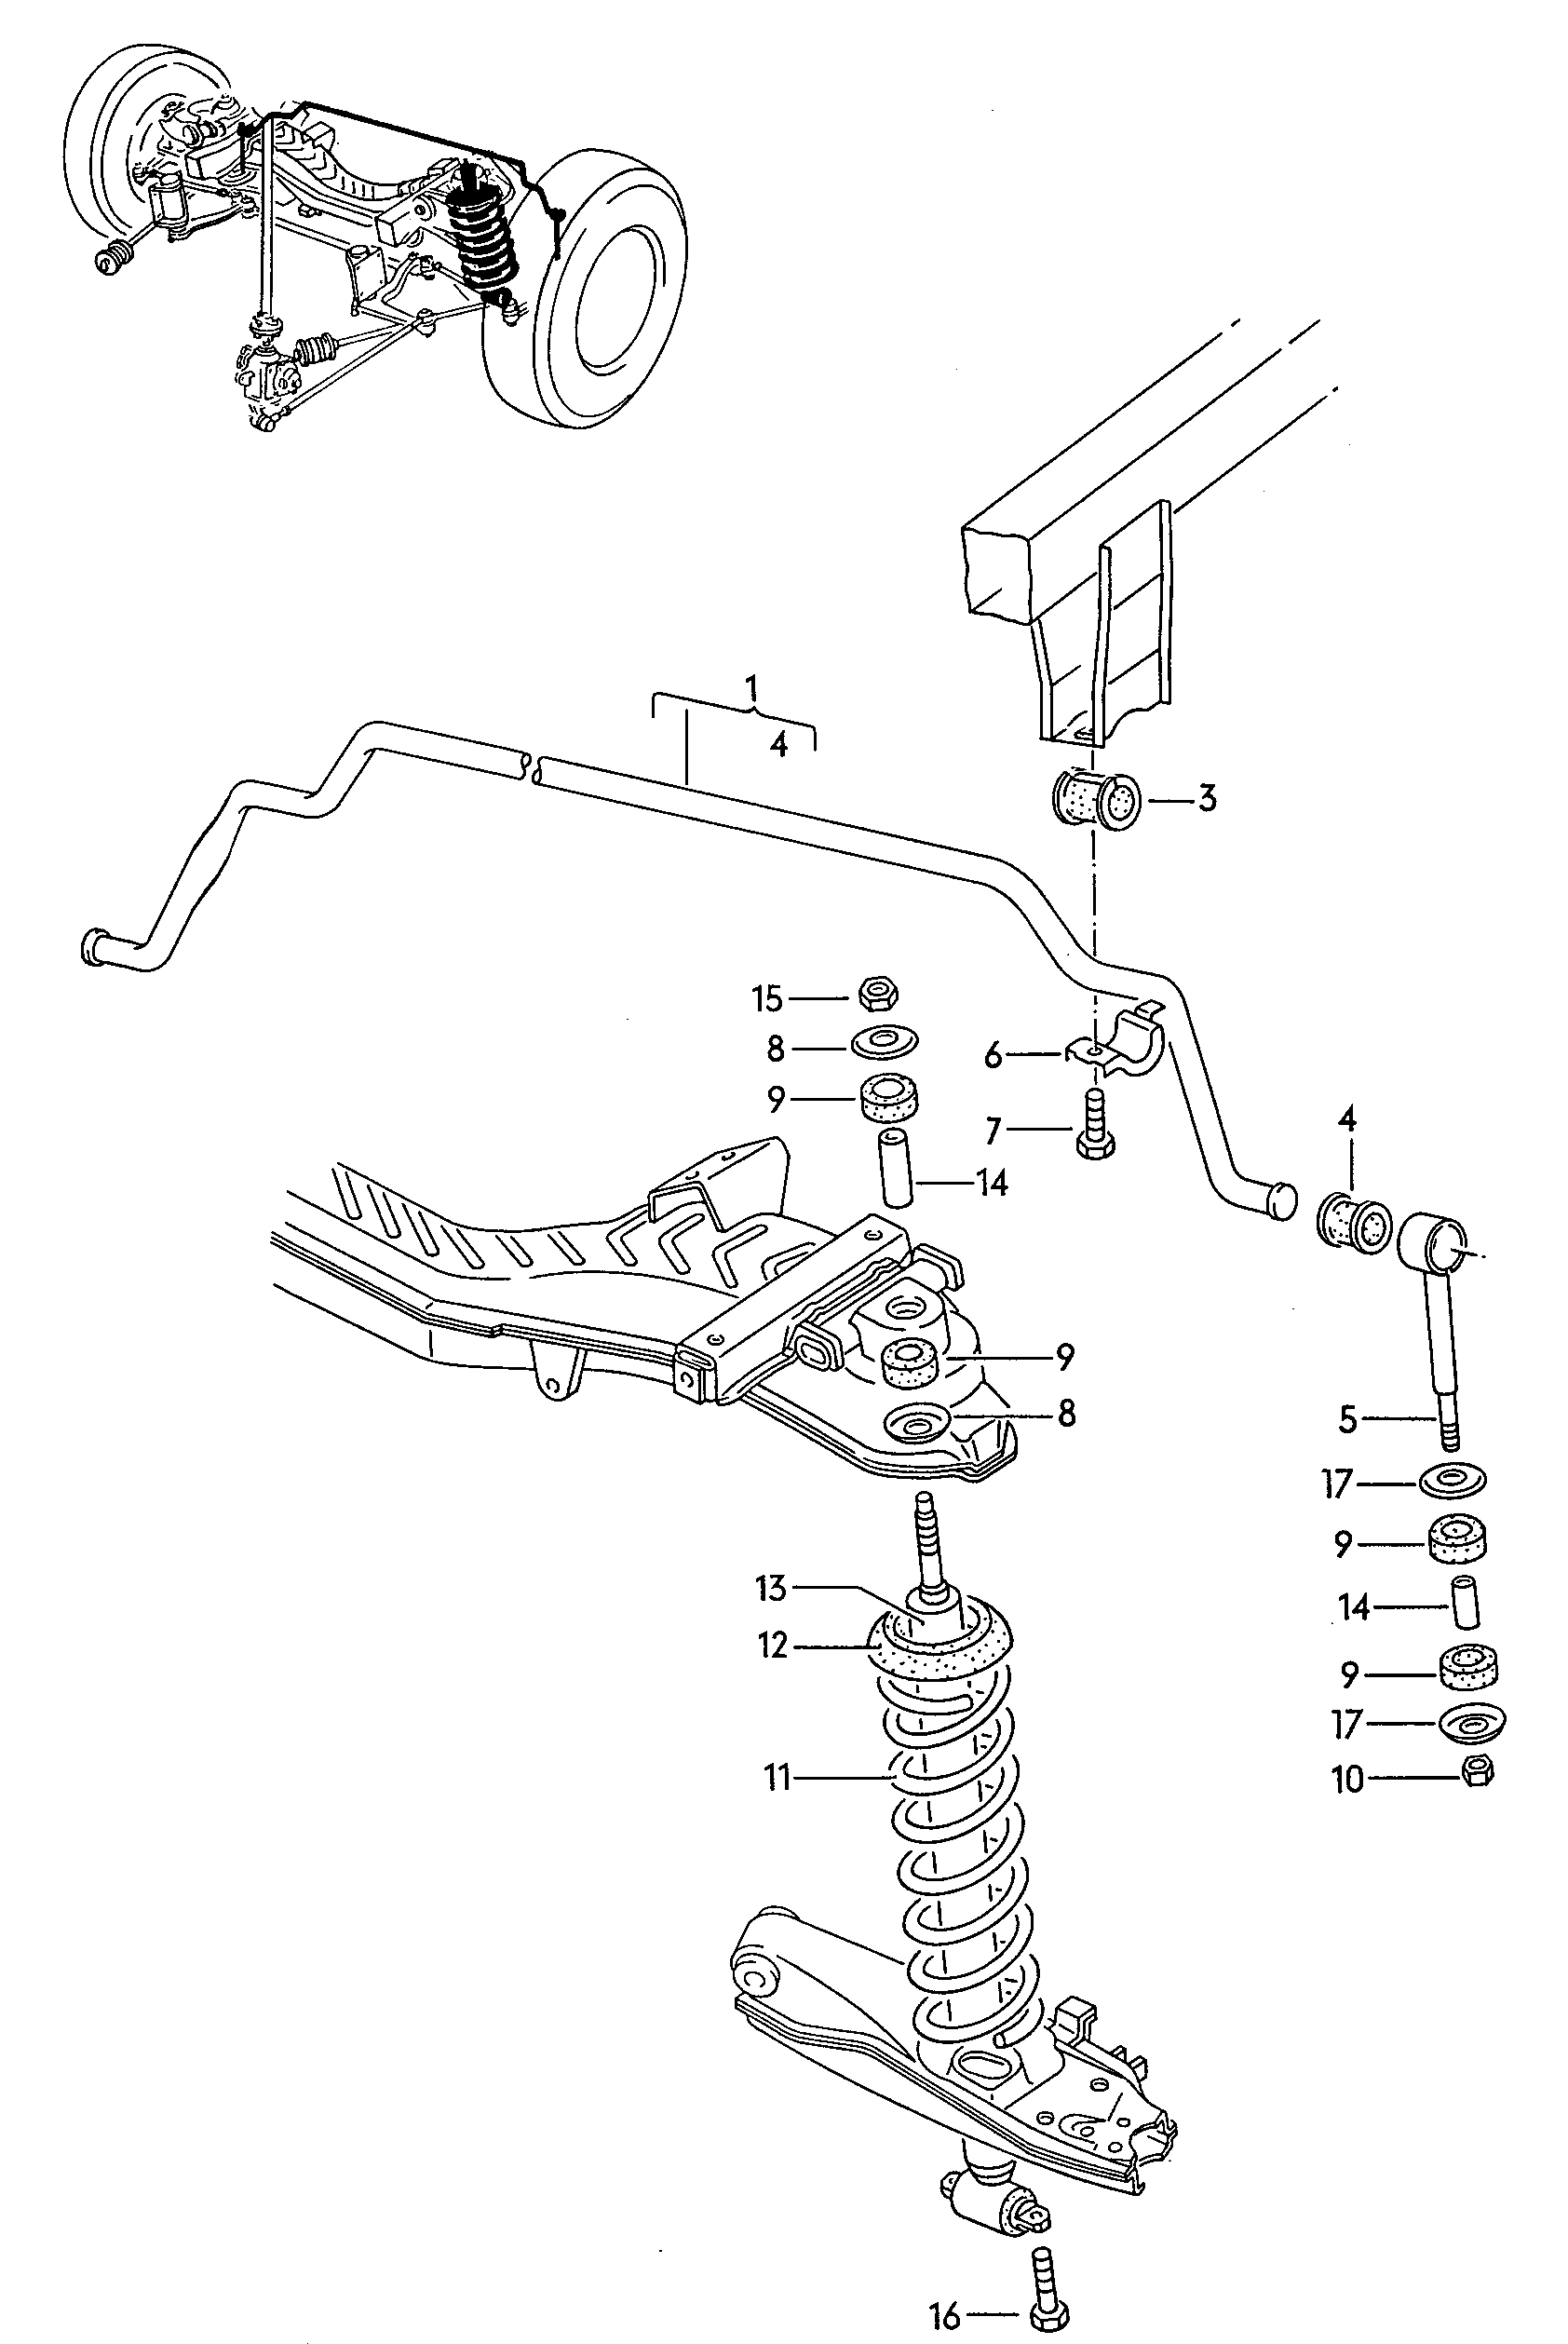 螺旋弹簧; 减震器; 稳定杆; 用于带螺旋弹簧的
前桥 - LT, LT 4x4(LT)  